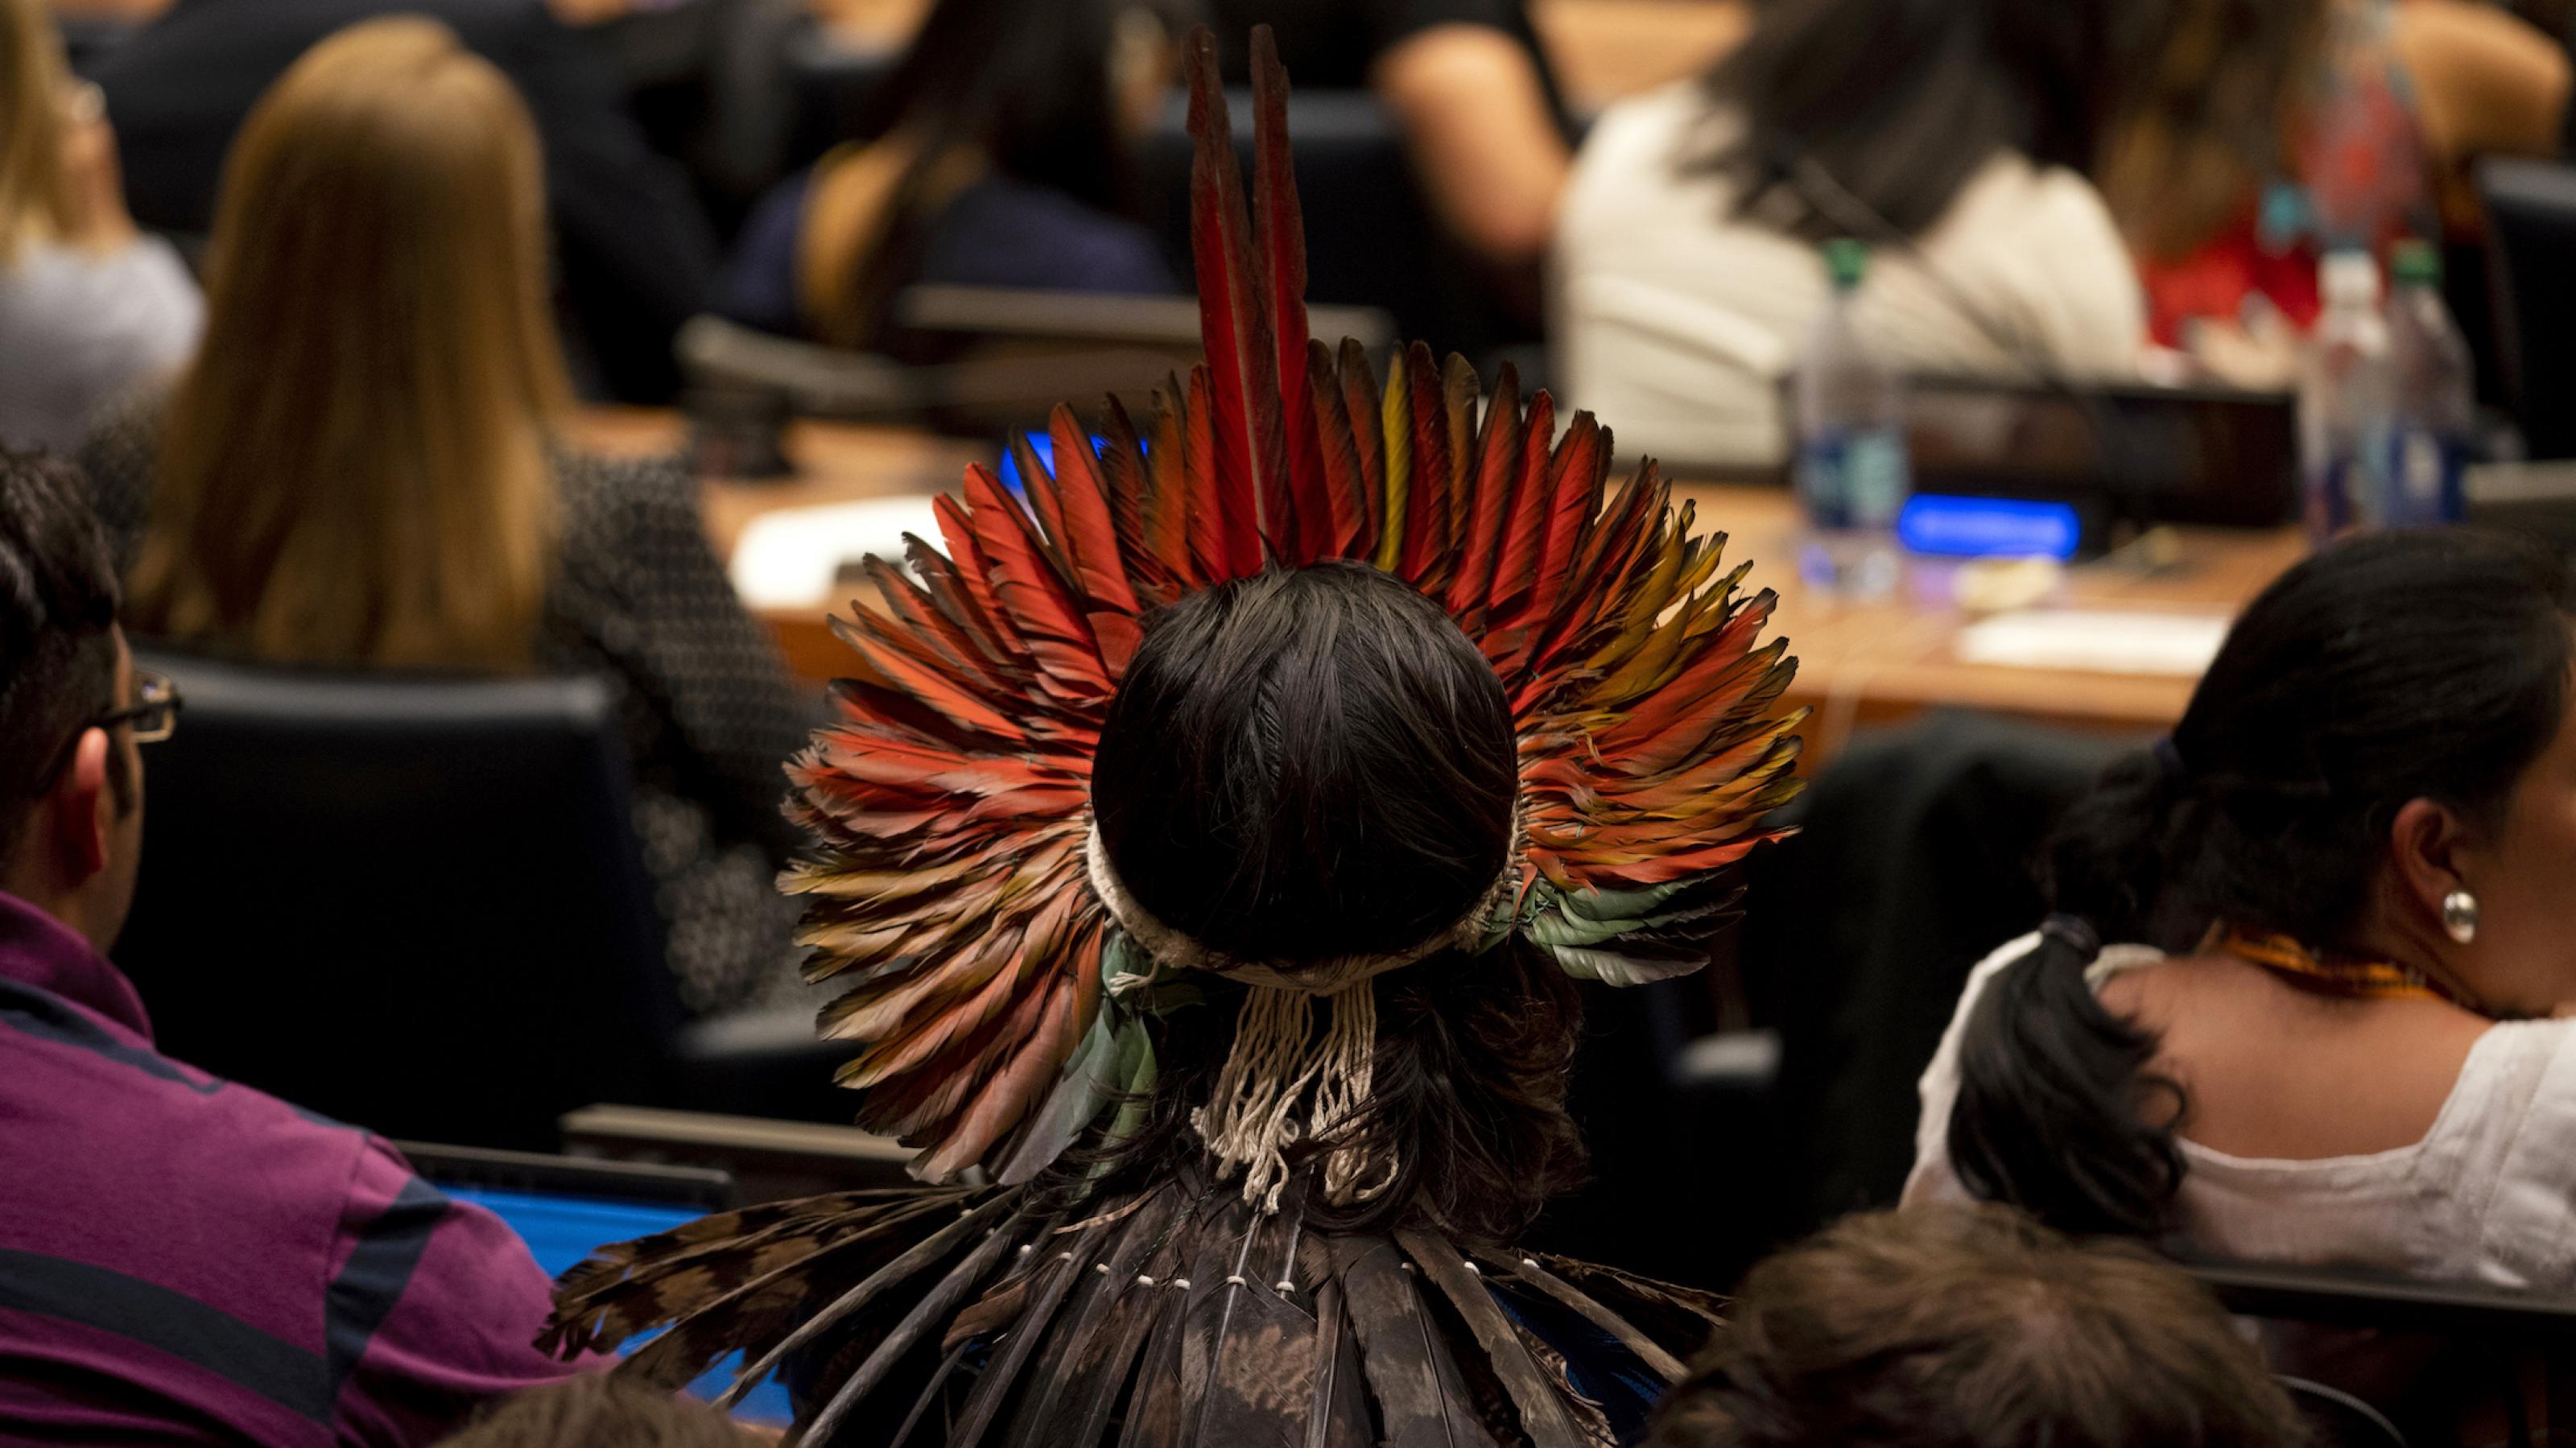 Das Foto zeigt einen Mann mit wunderschönem Federschmuck, der in einem Konferenzsaal der Vereinten Nationen sitzt, von hinten.